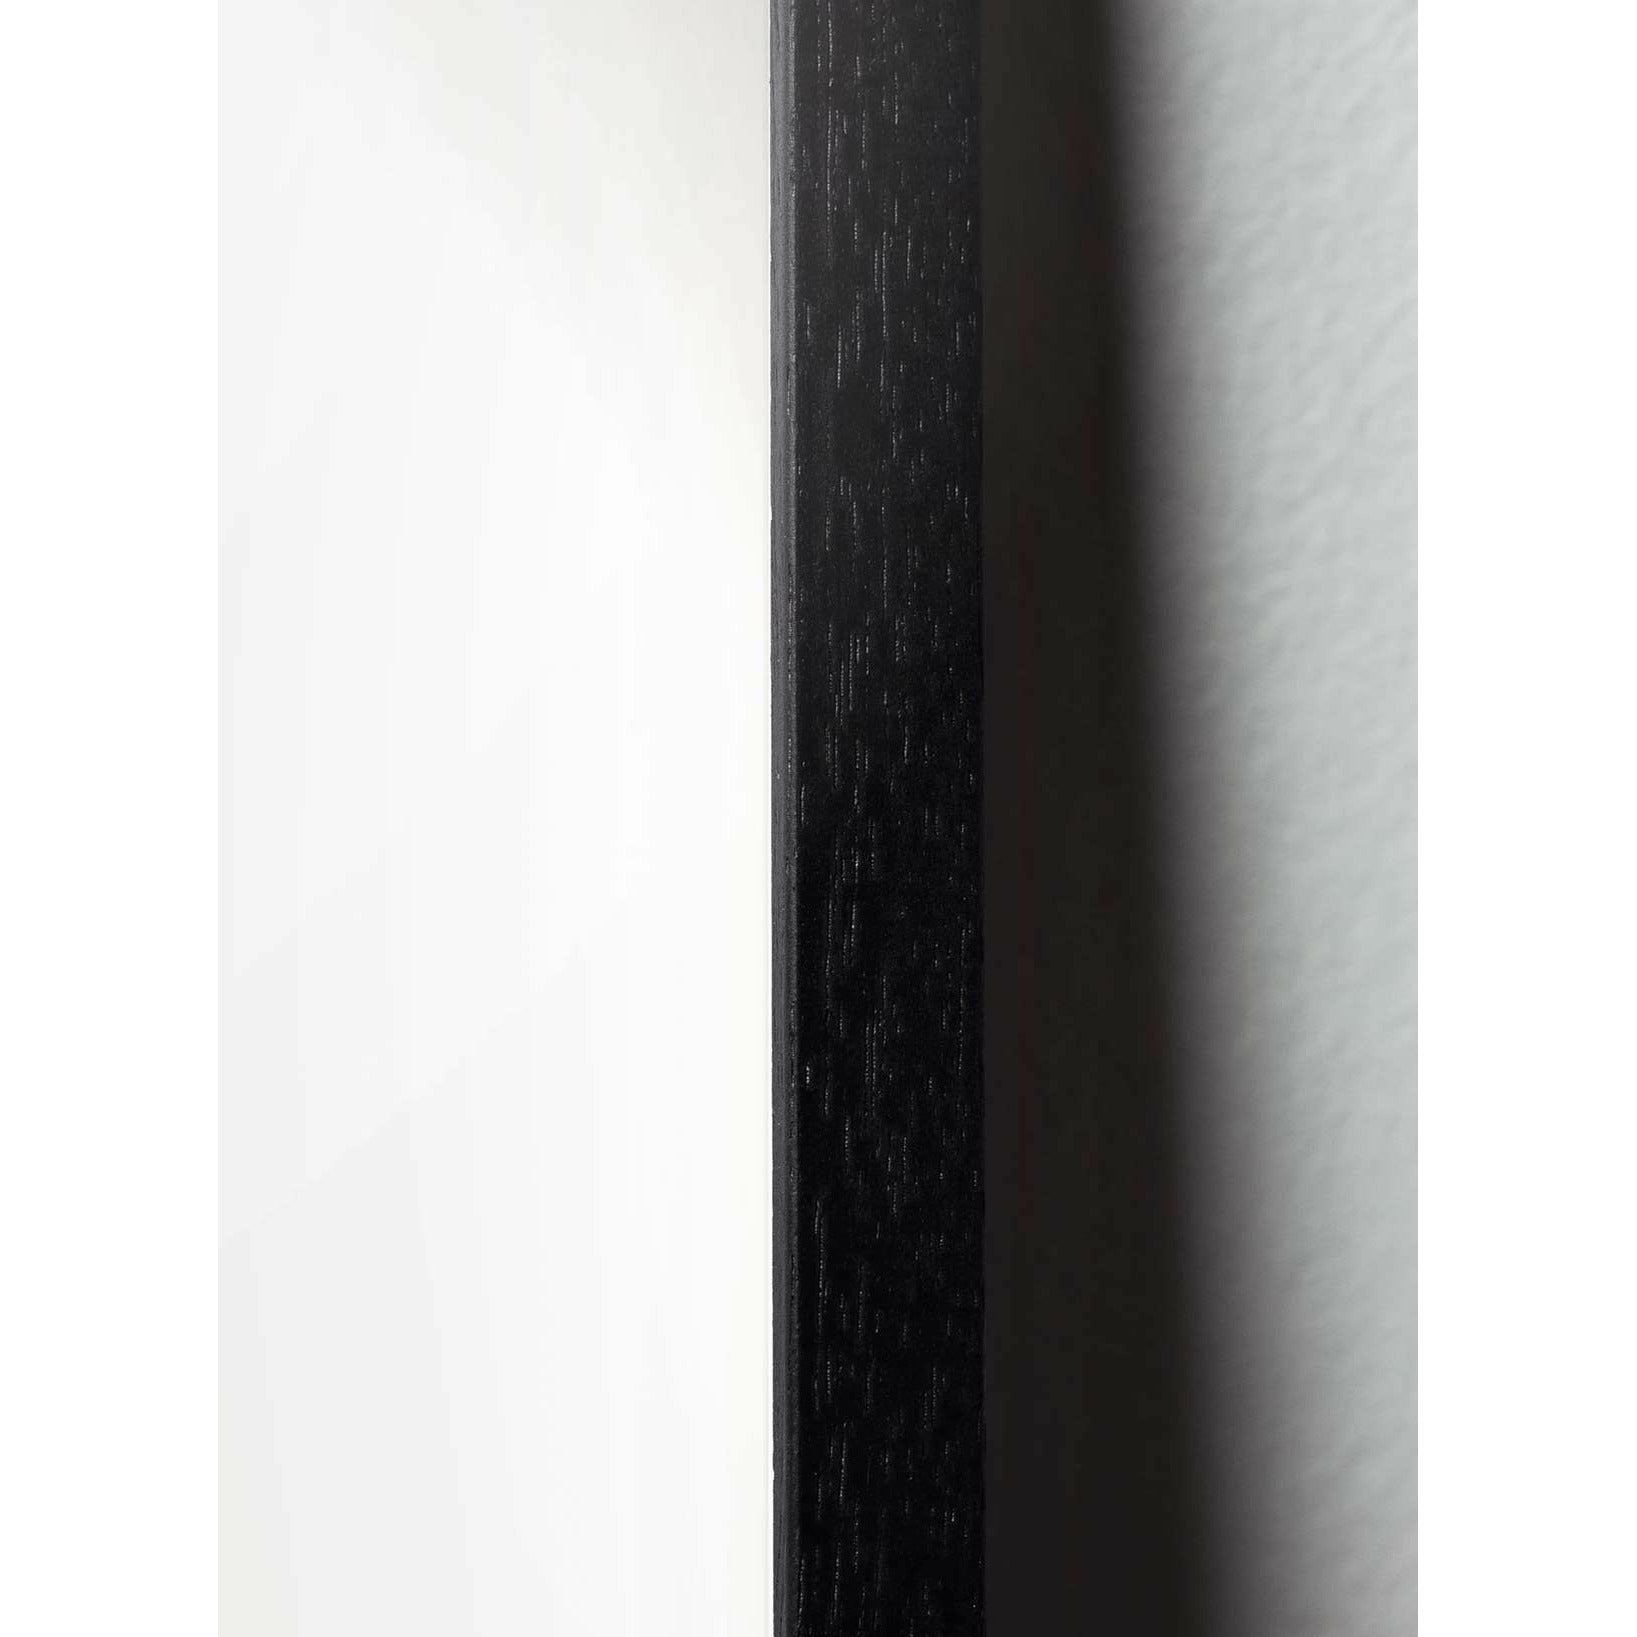 Brainchild Äggfigursaffisch, ram i svart -målat trä 30x40 cm, svart